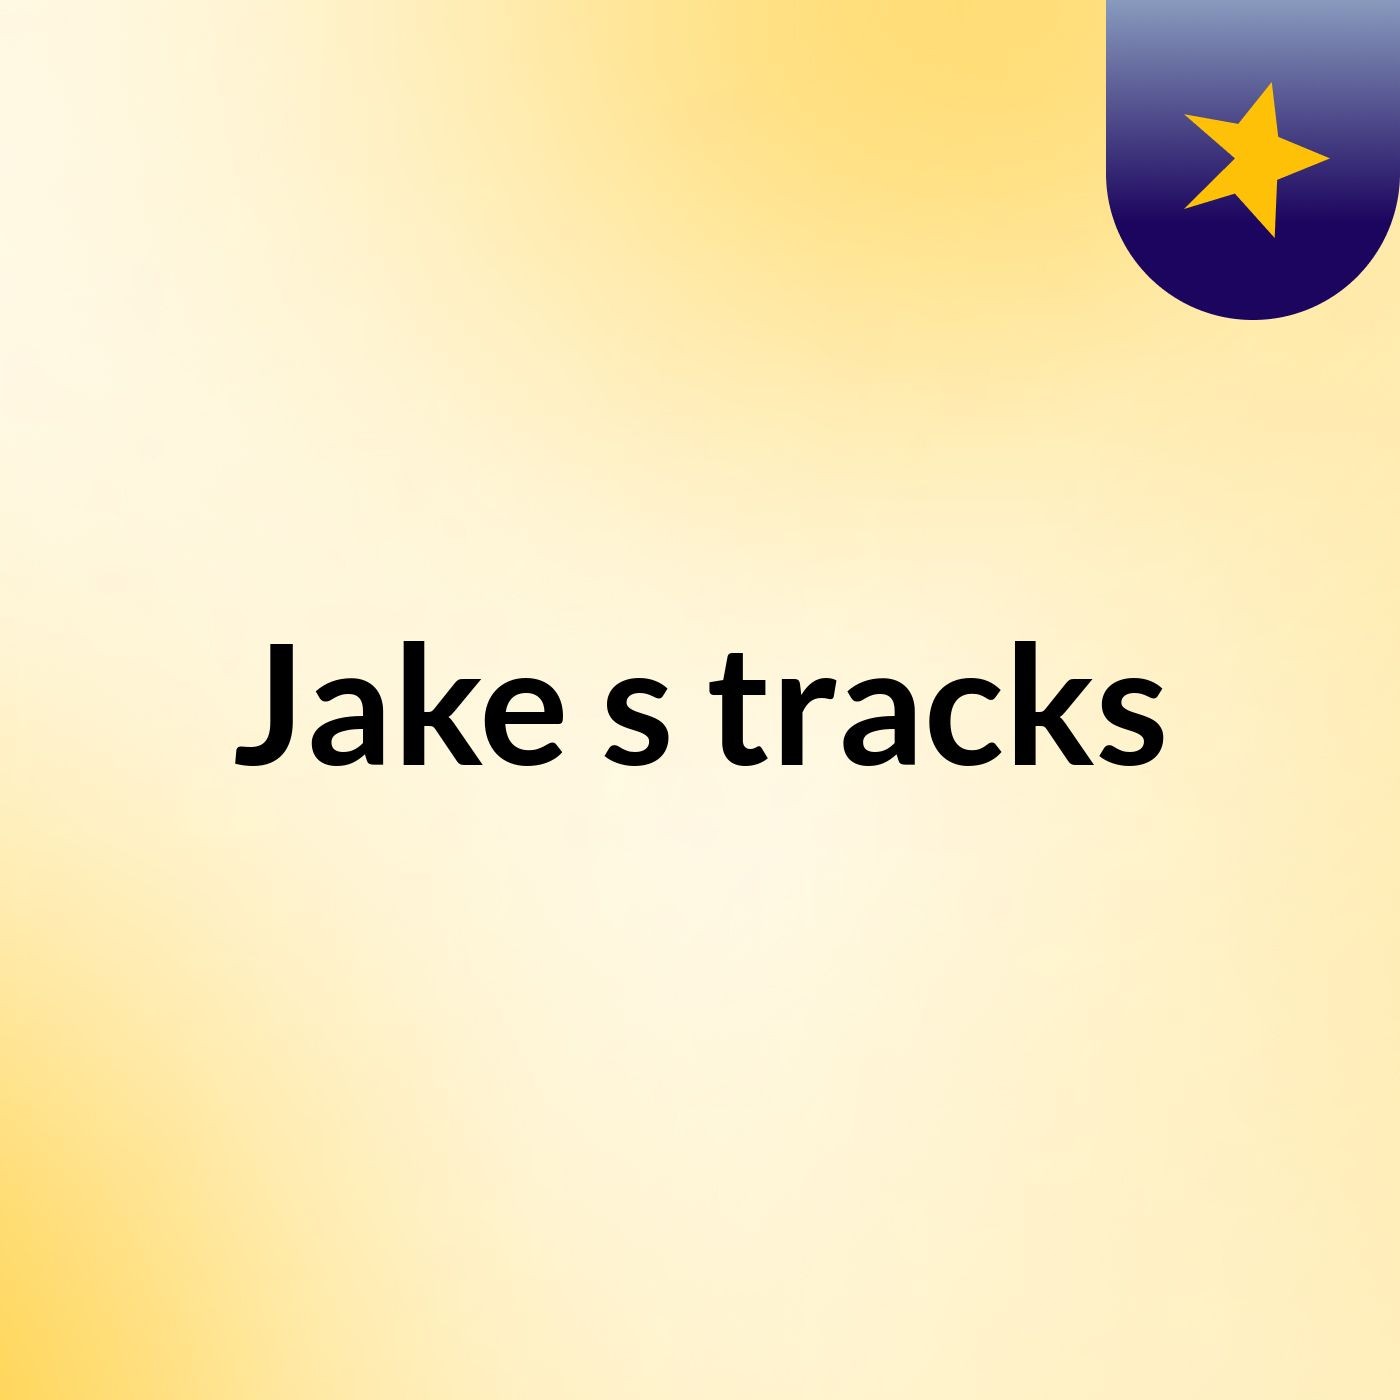 Jake's tracks